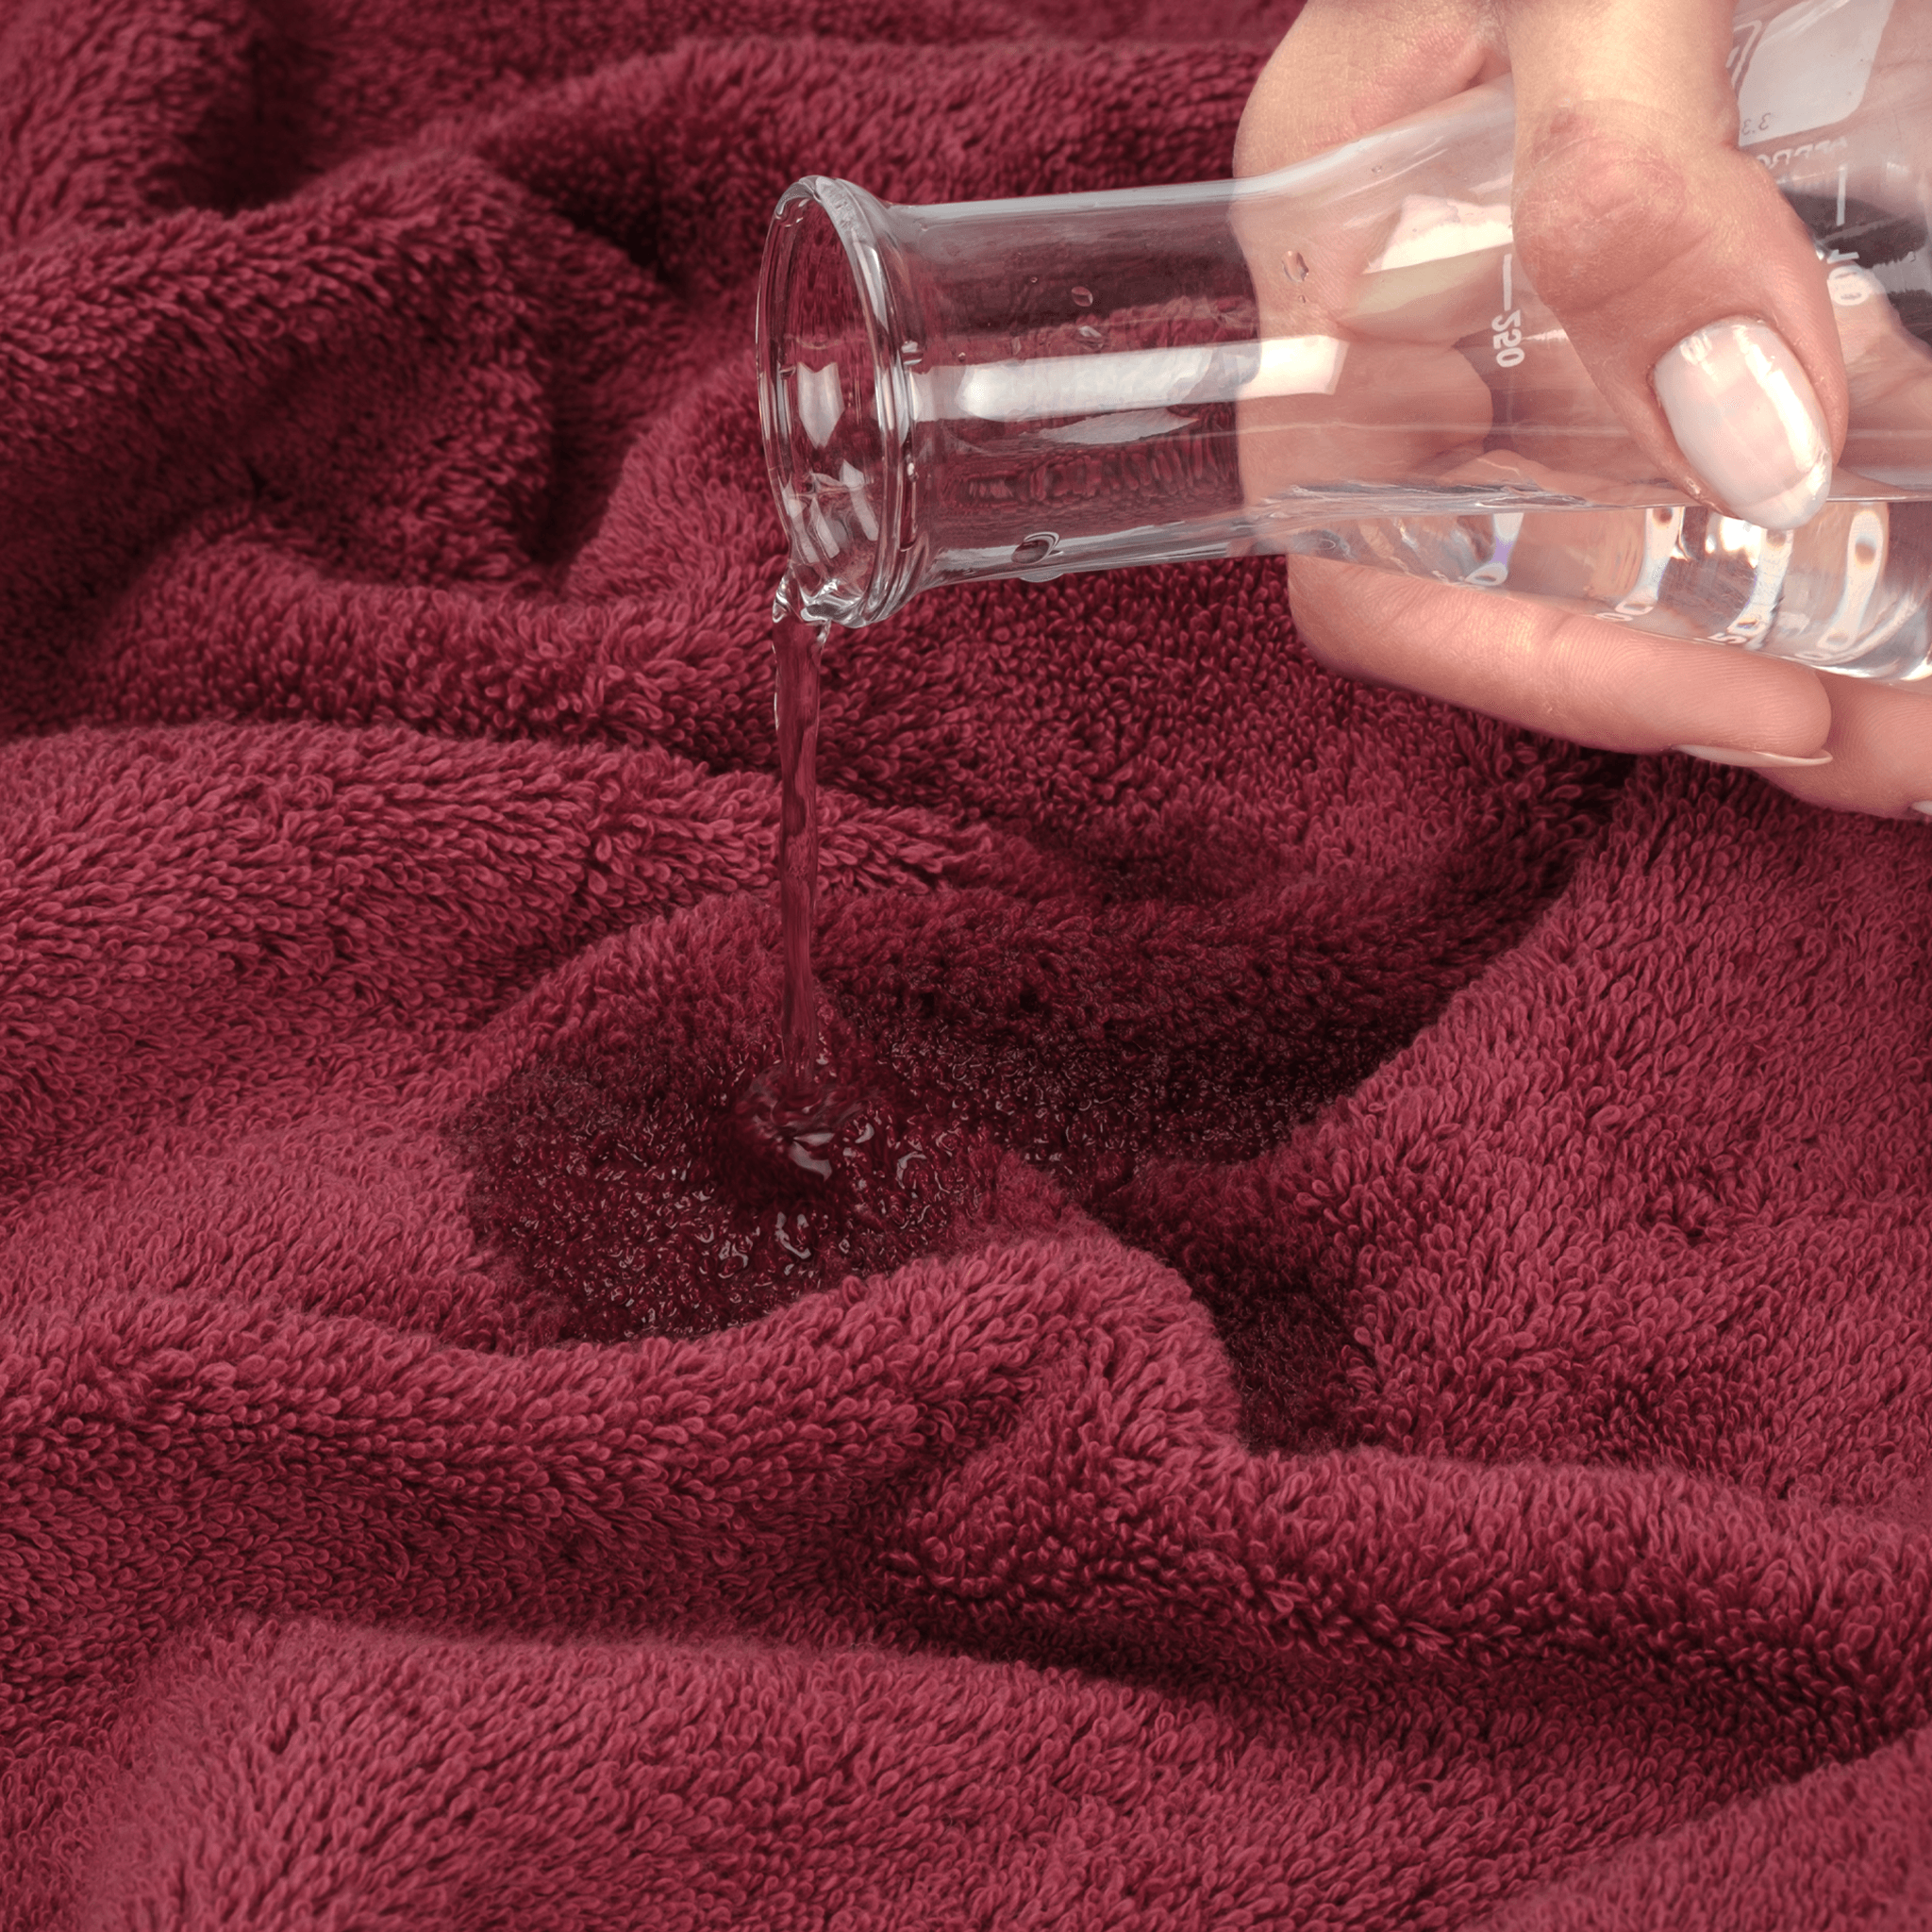 American Soft Linen - 3 Piece Turkish Cotton Towel Set - Bordeaux-Red - 6